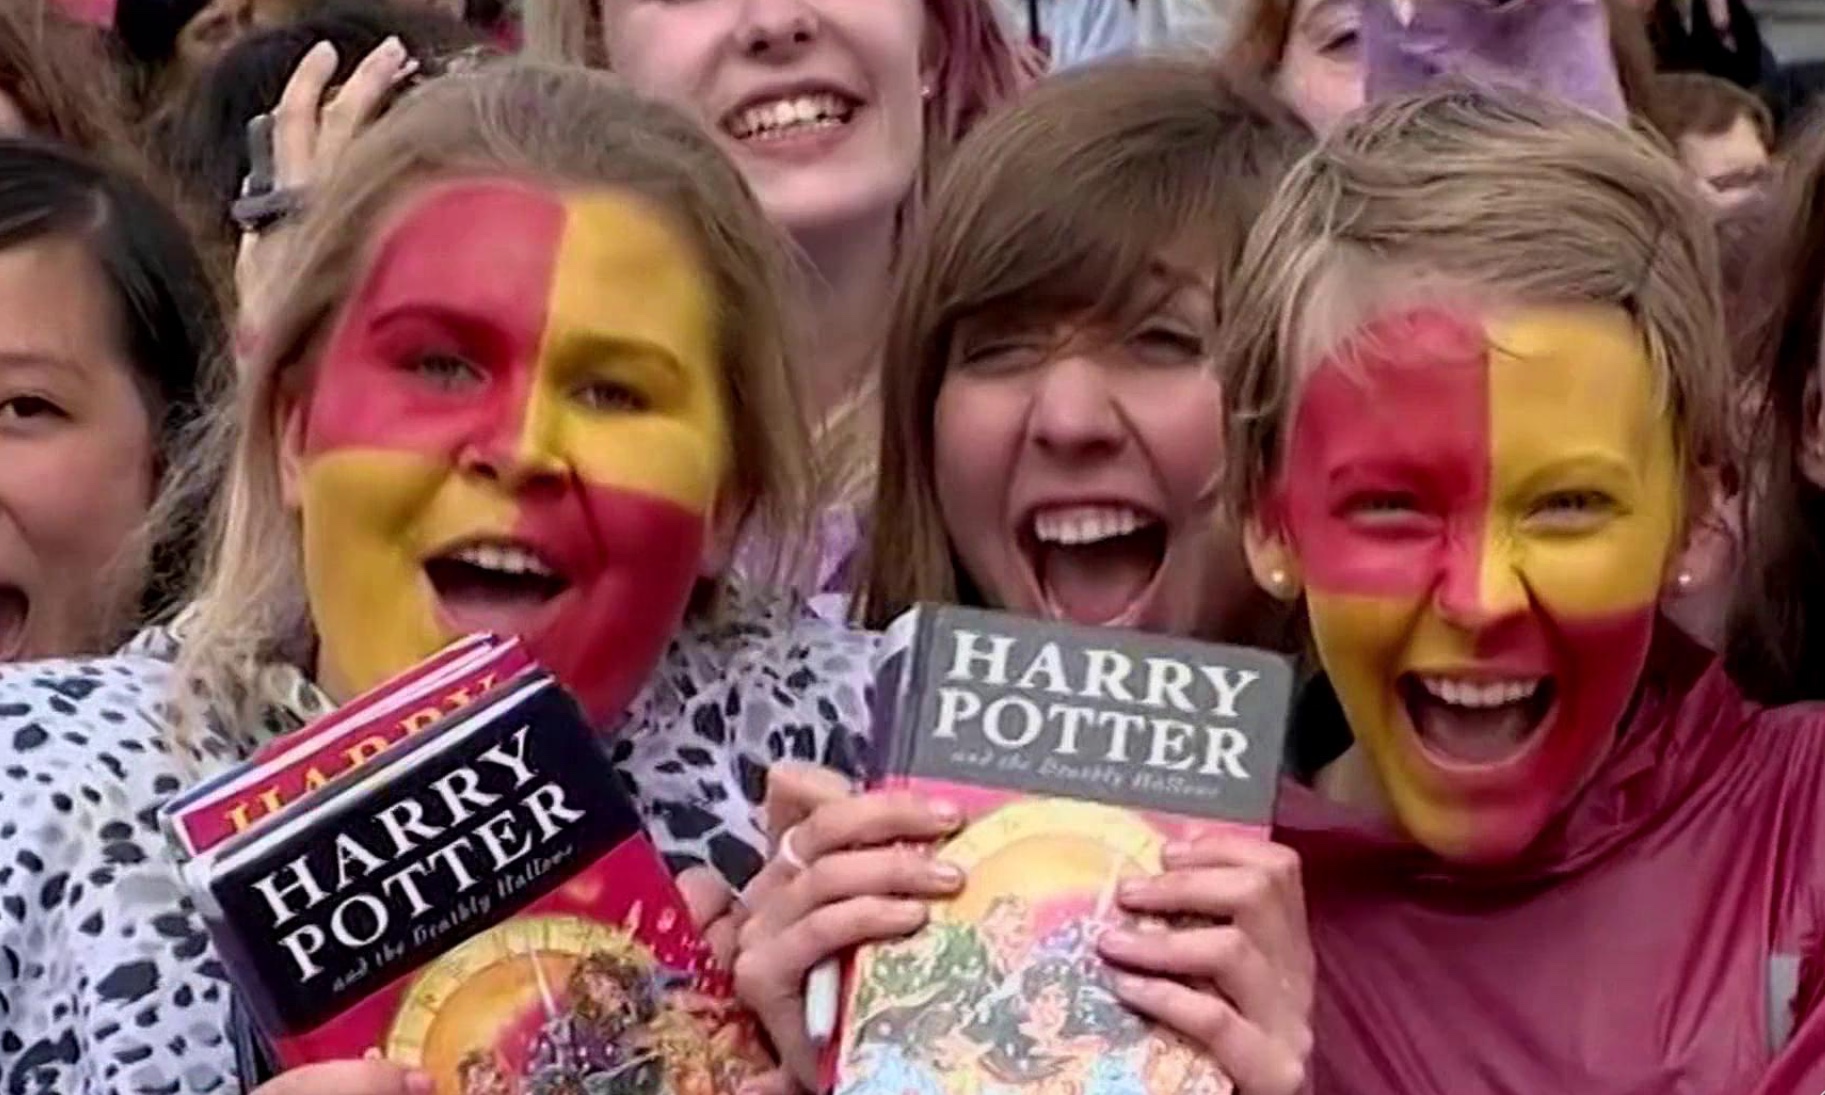 Cena do documentário Harry Potter 20th Anniversary: Return To Hogwarts exibe um grupo de fãs de Harry Potter. Em destaque estão duas meninas brancas e loiras com o rosto pintado de vermelho e amarelo, com expressão de animação segurando um exemplar do livro Harry Potter e as Relíquias da Morte.